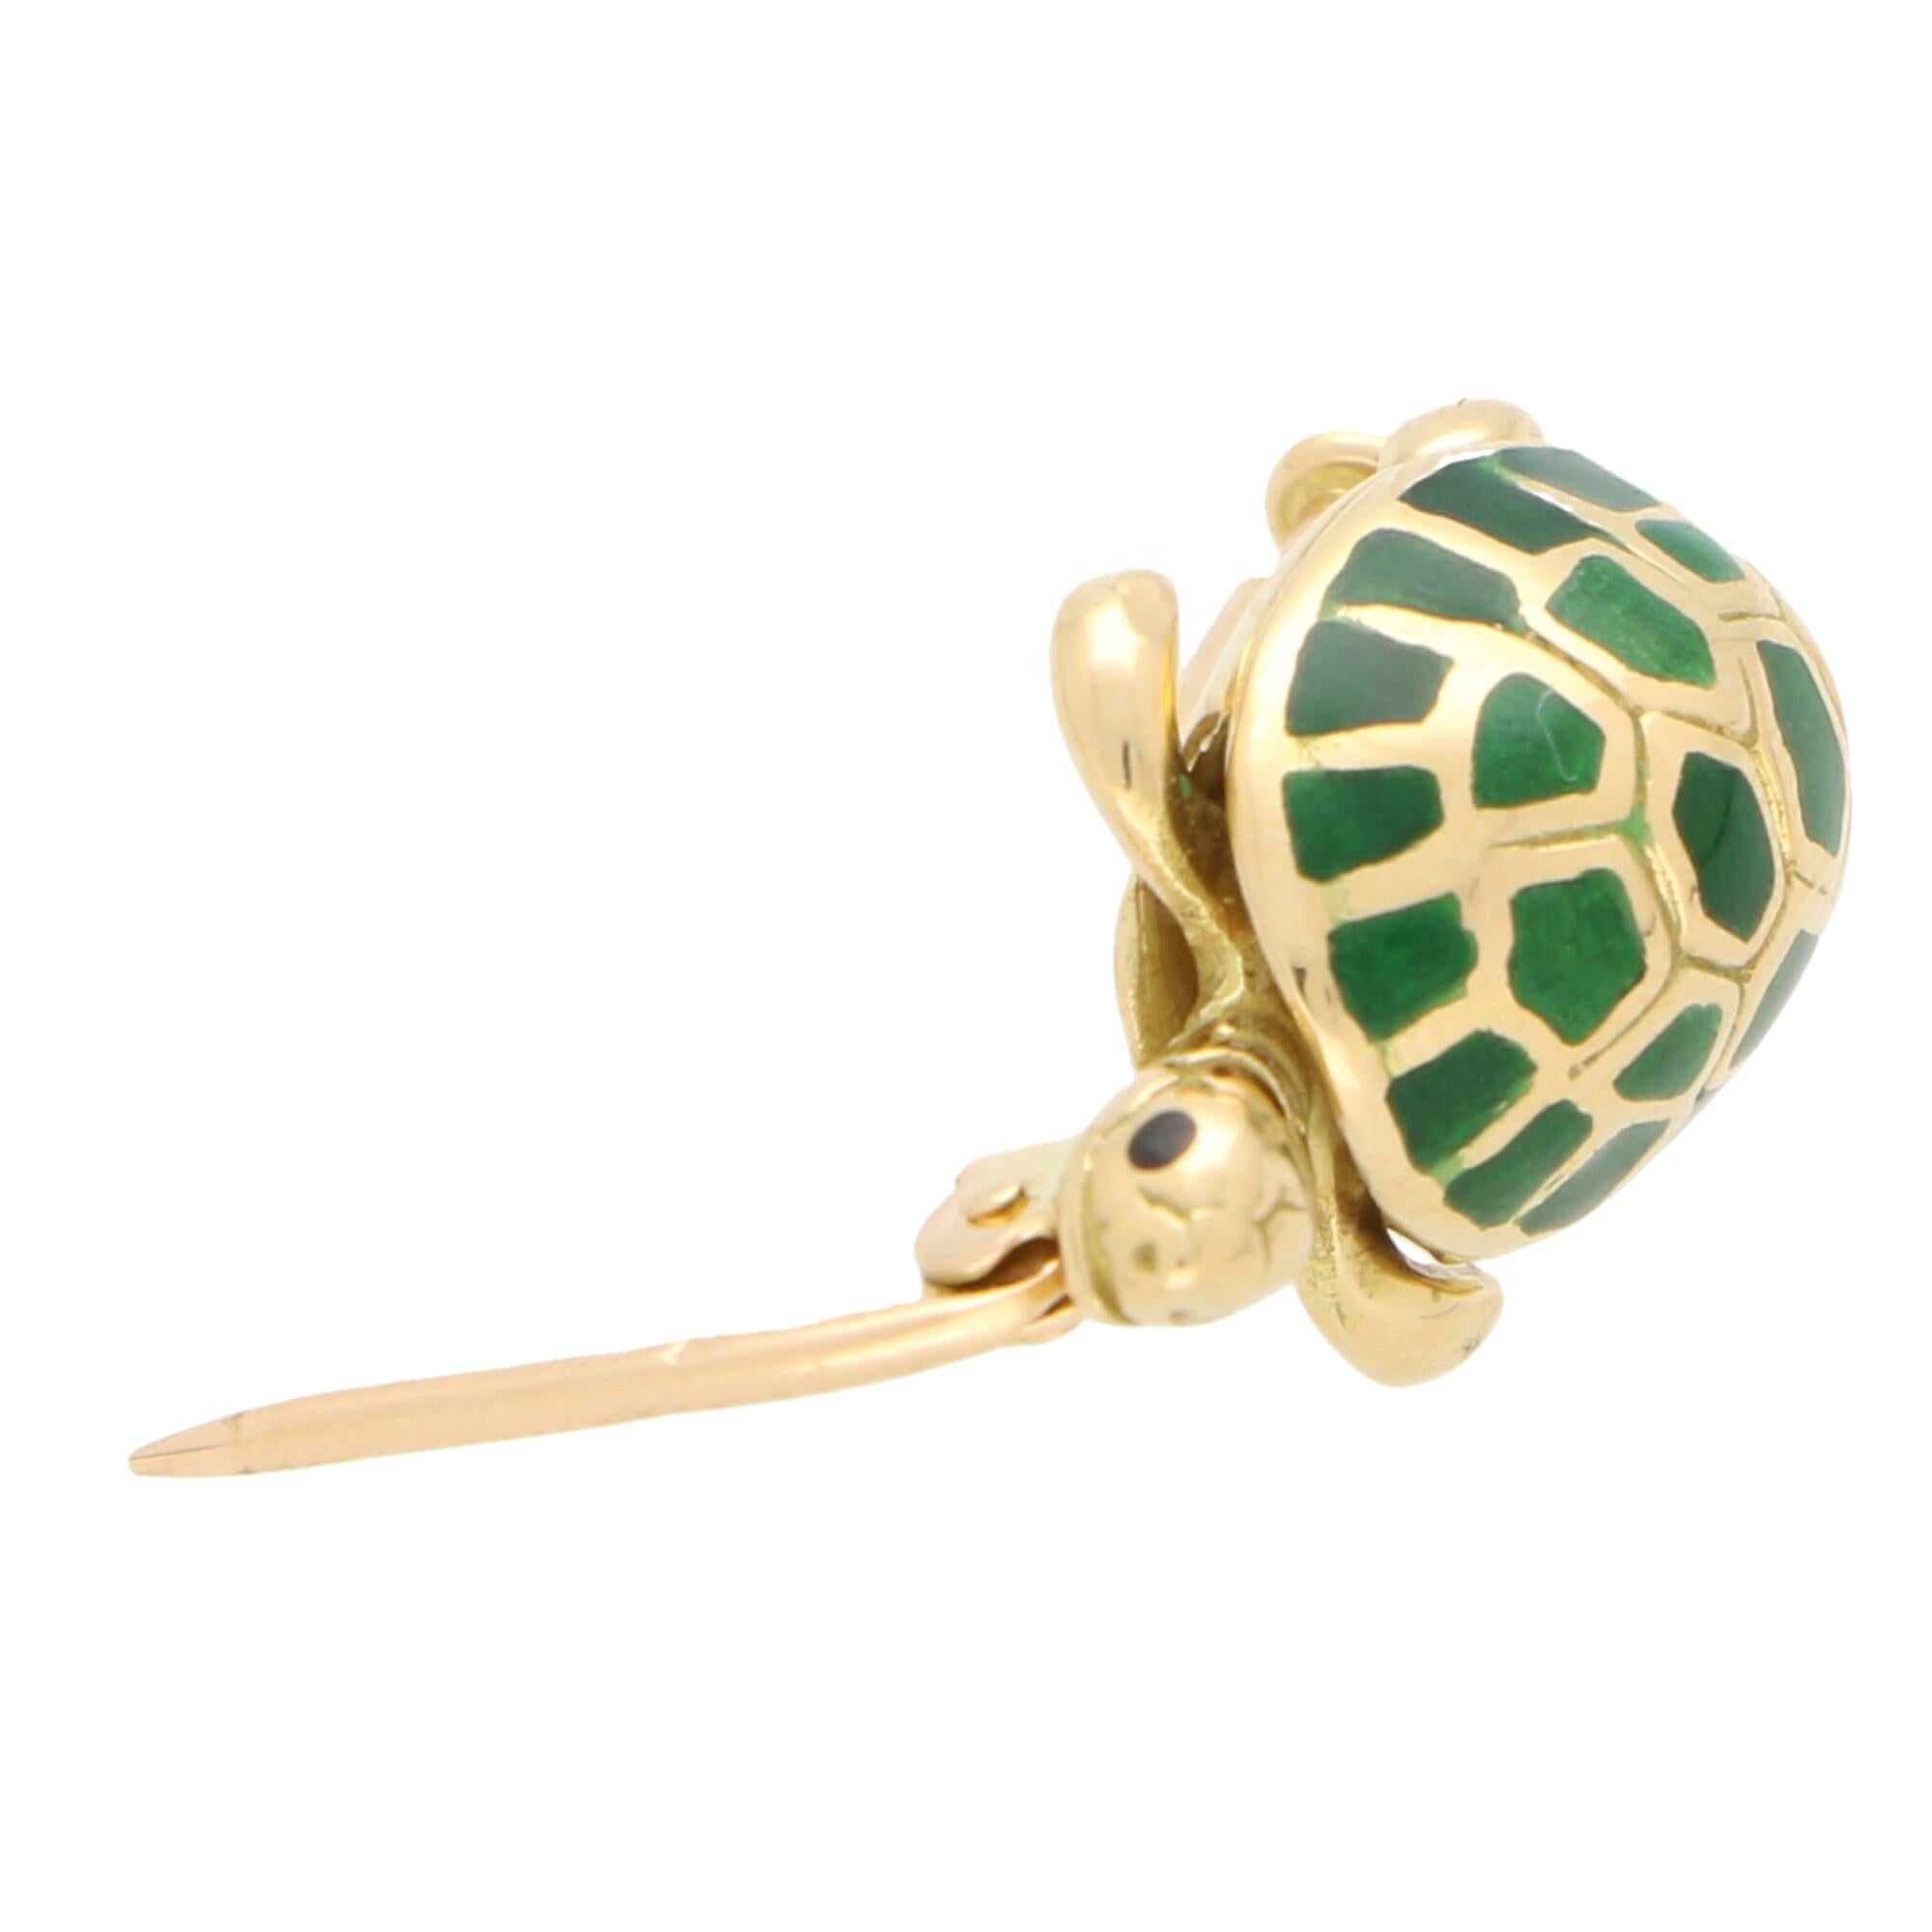 Women's or Men's Boucheron Green Enamel Turtle Pin / Brooch Set in 18 Karat Yellow Gold